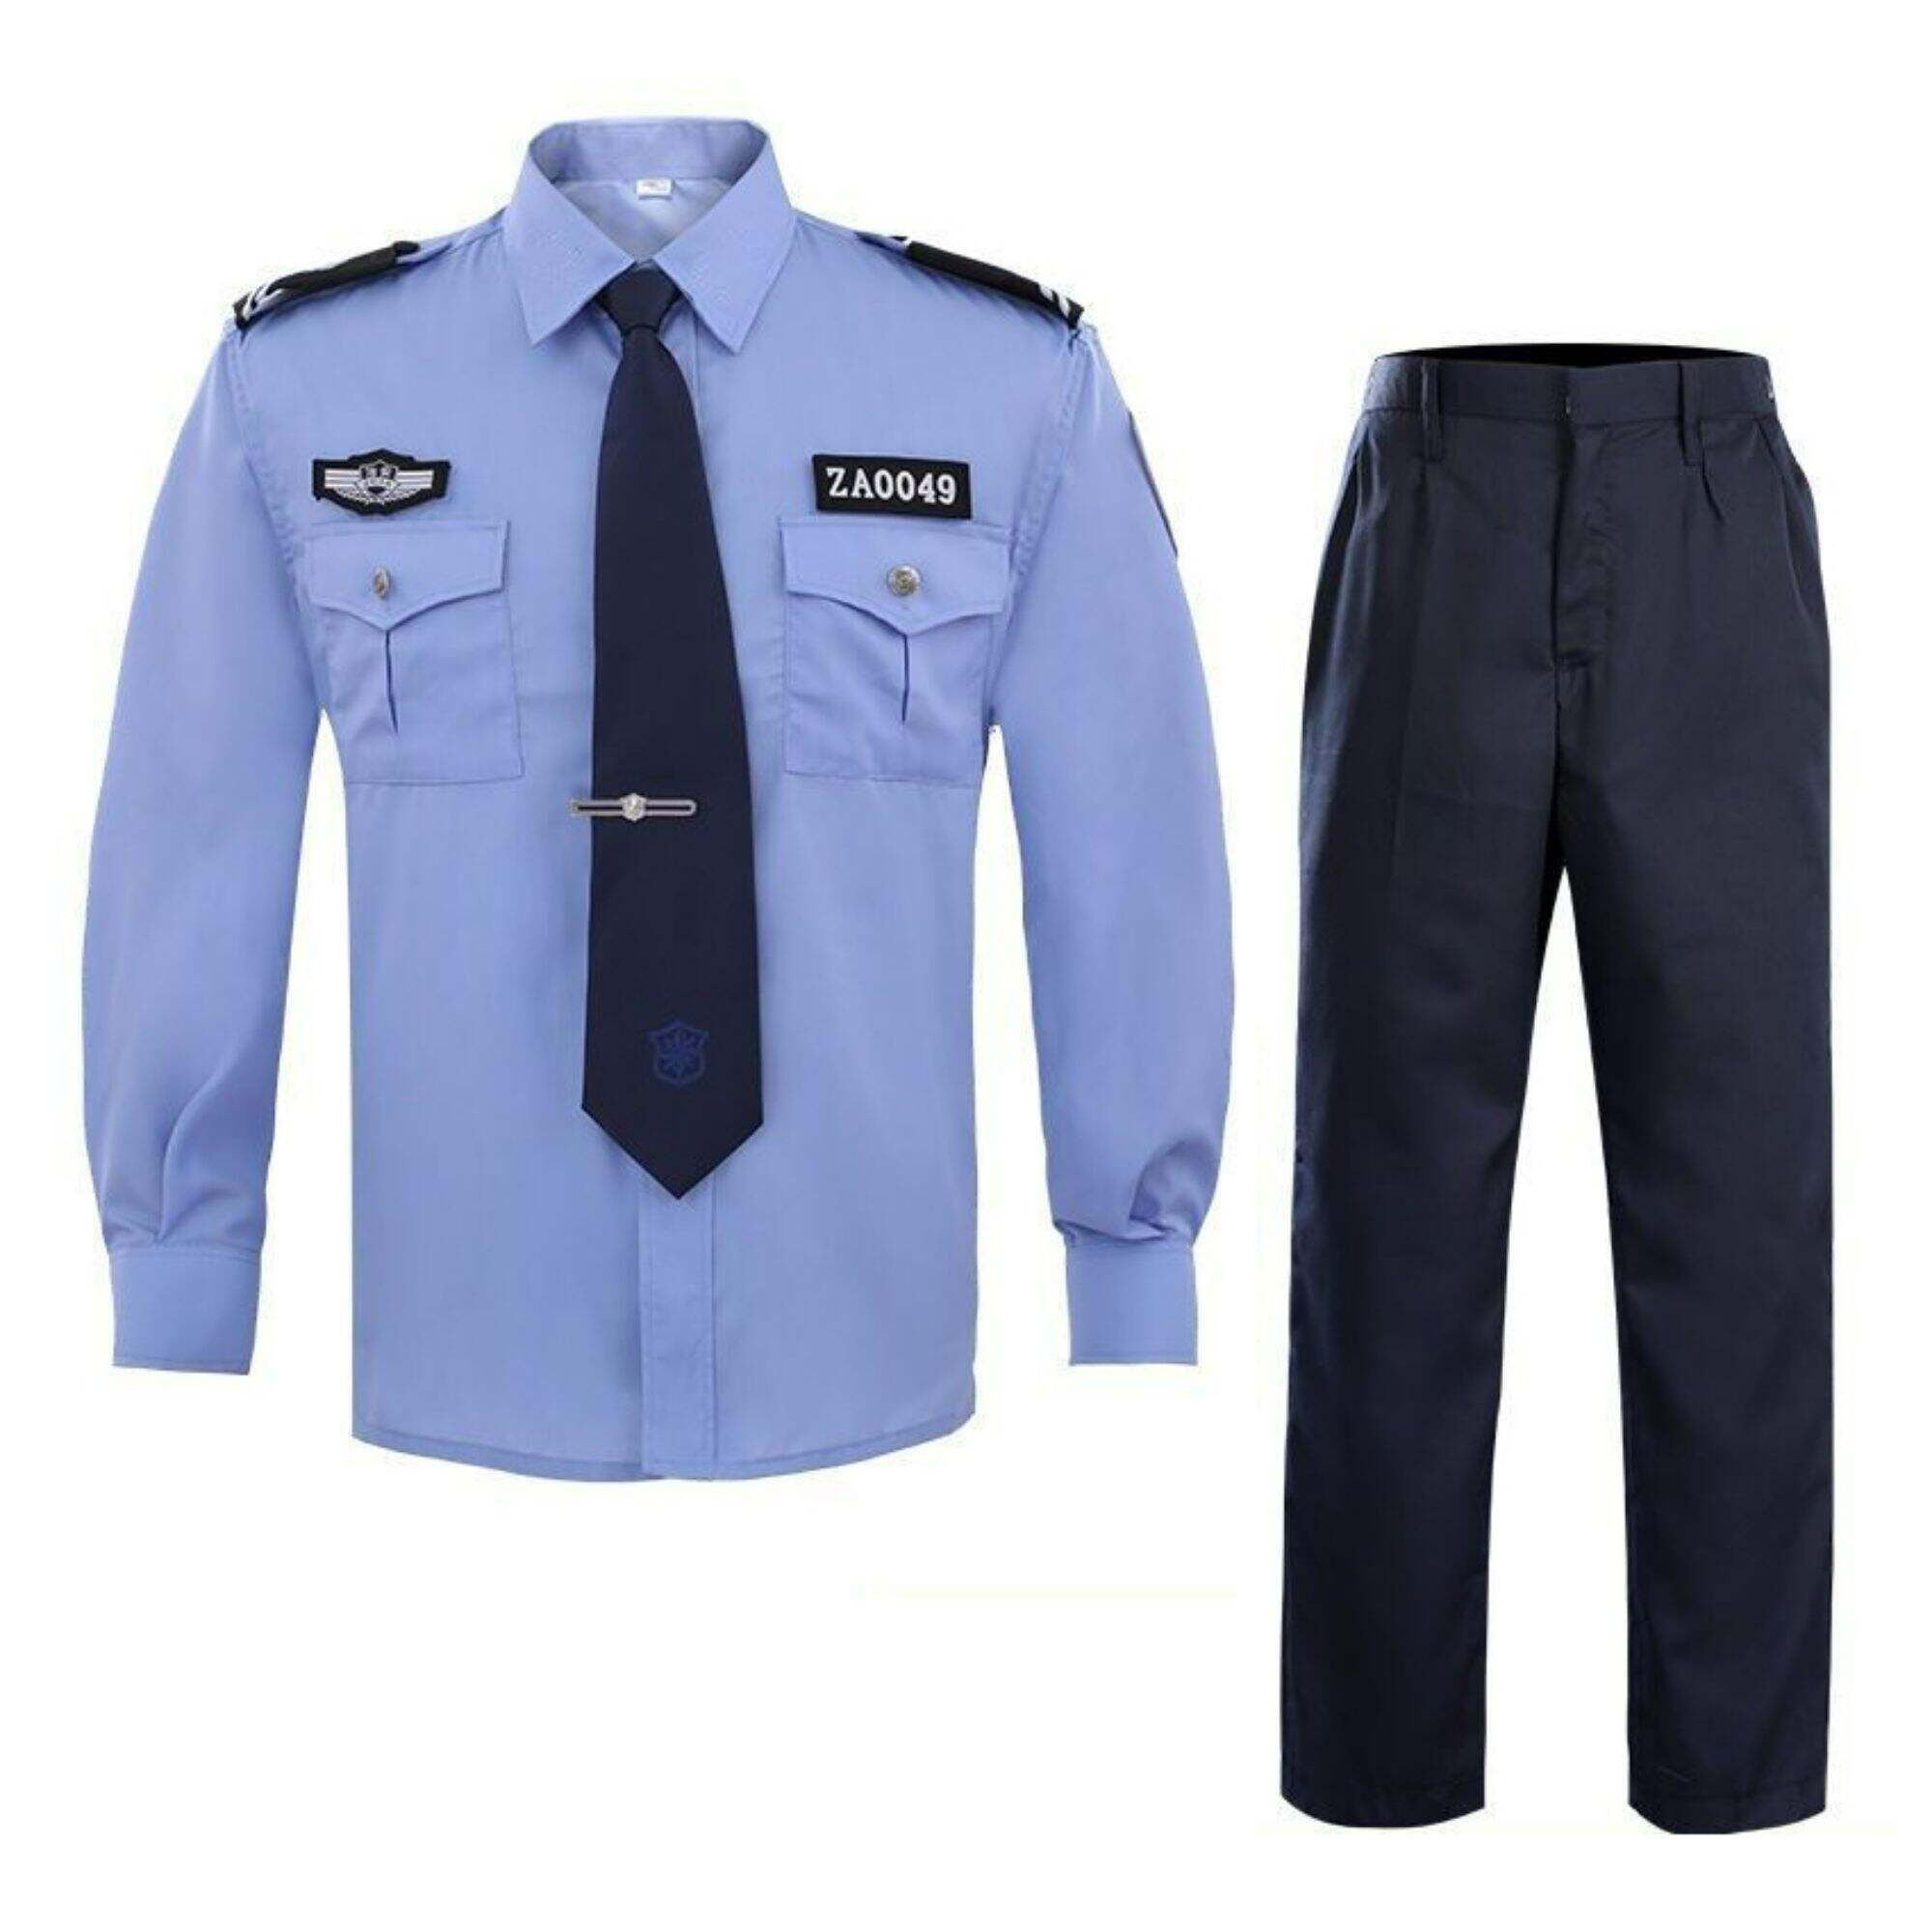 Wholesale High Quality Security Guard Uniform Manufacture Shipment Suit